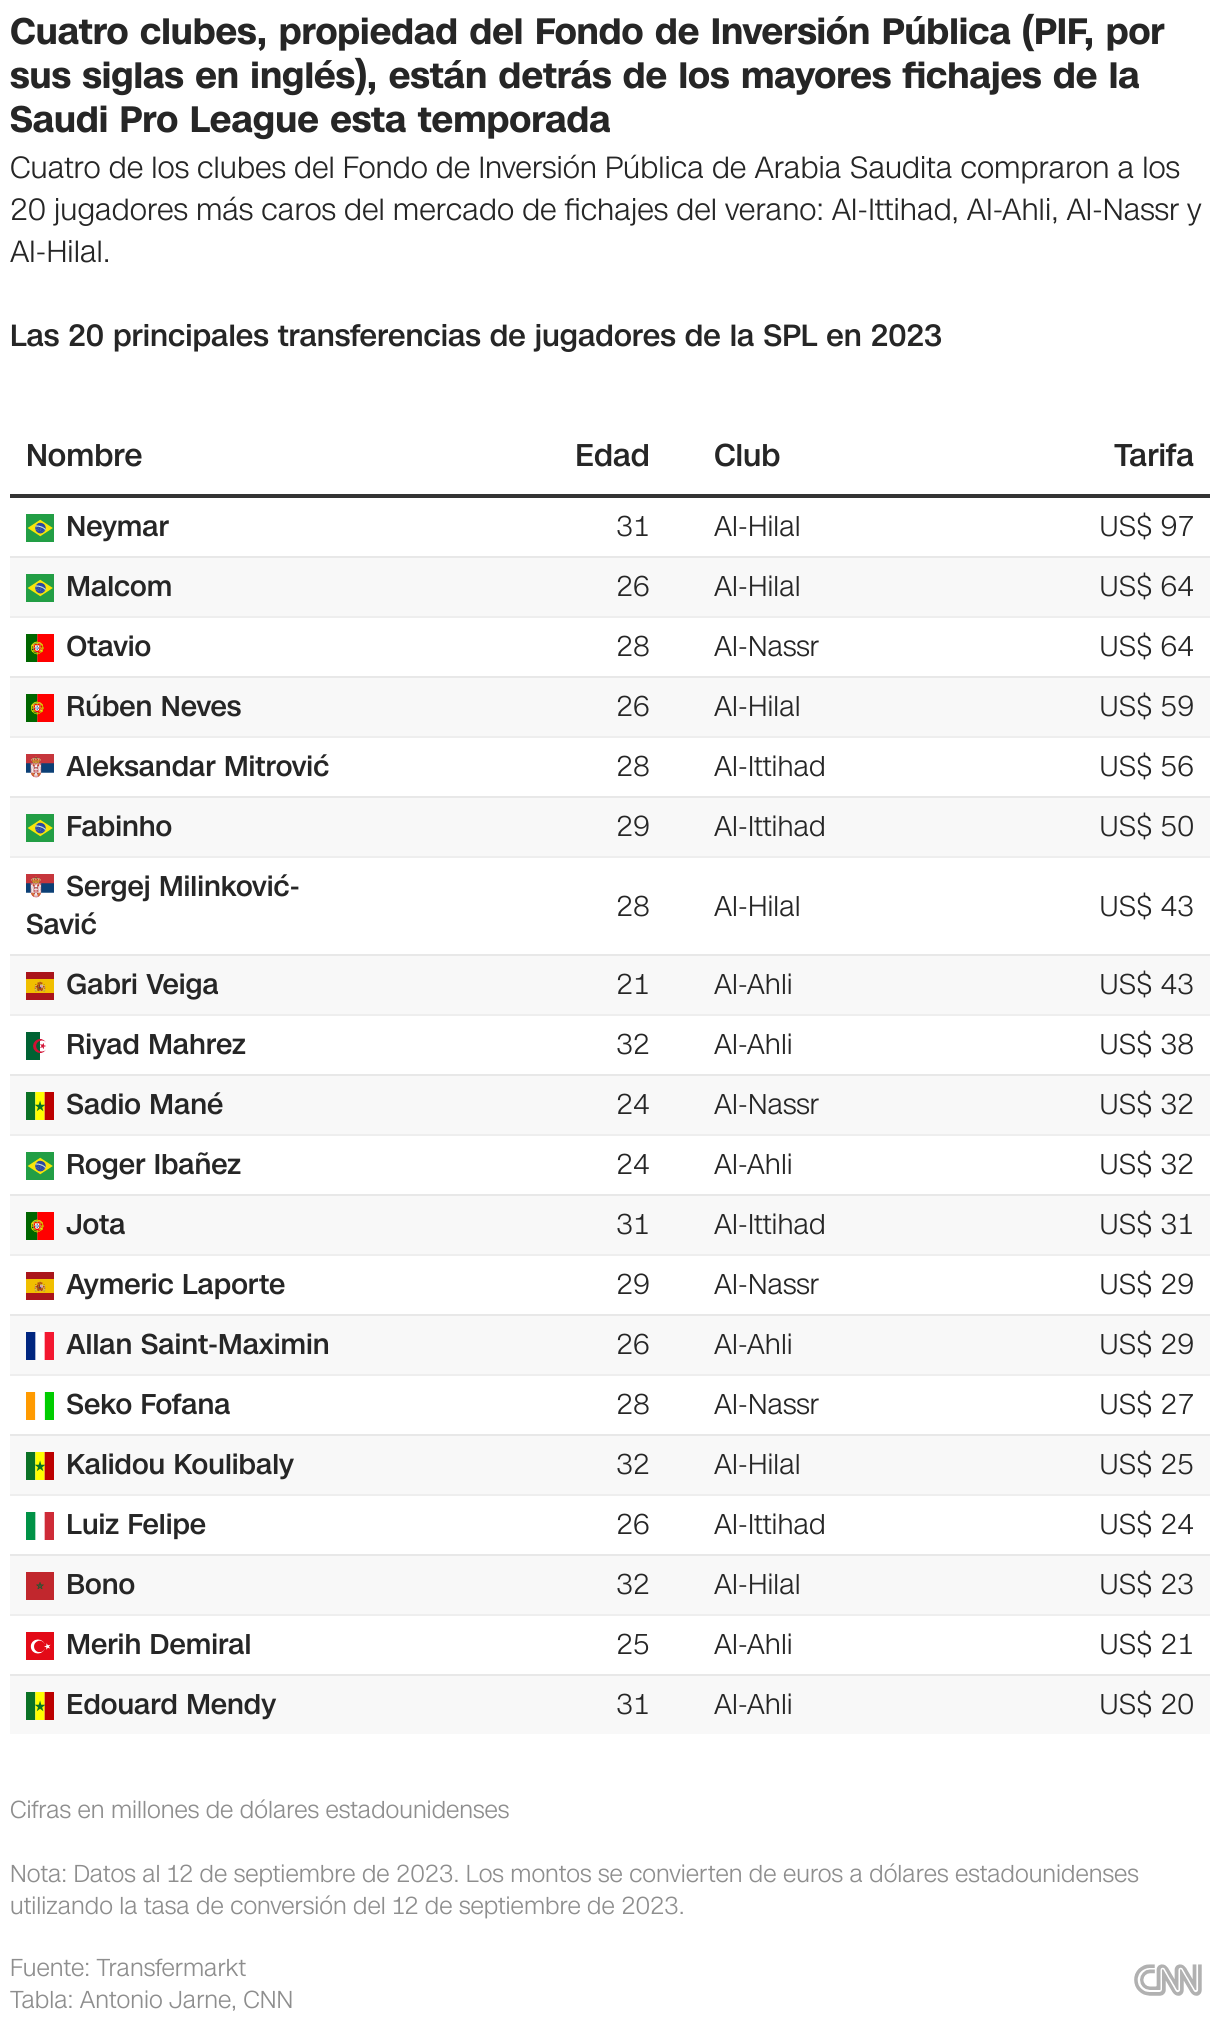 Una tabla que enumera 20 jugadores de fútbol que se mudaron a la Saudi Pro League este verano clasificados según las tarifas de transferencia pagadas.